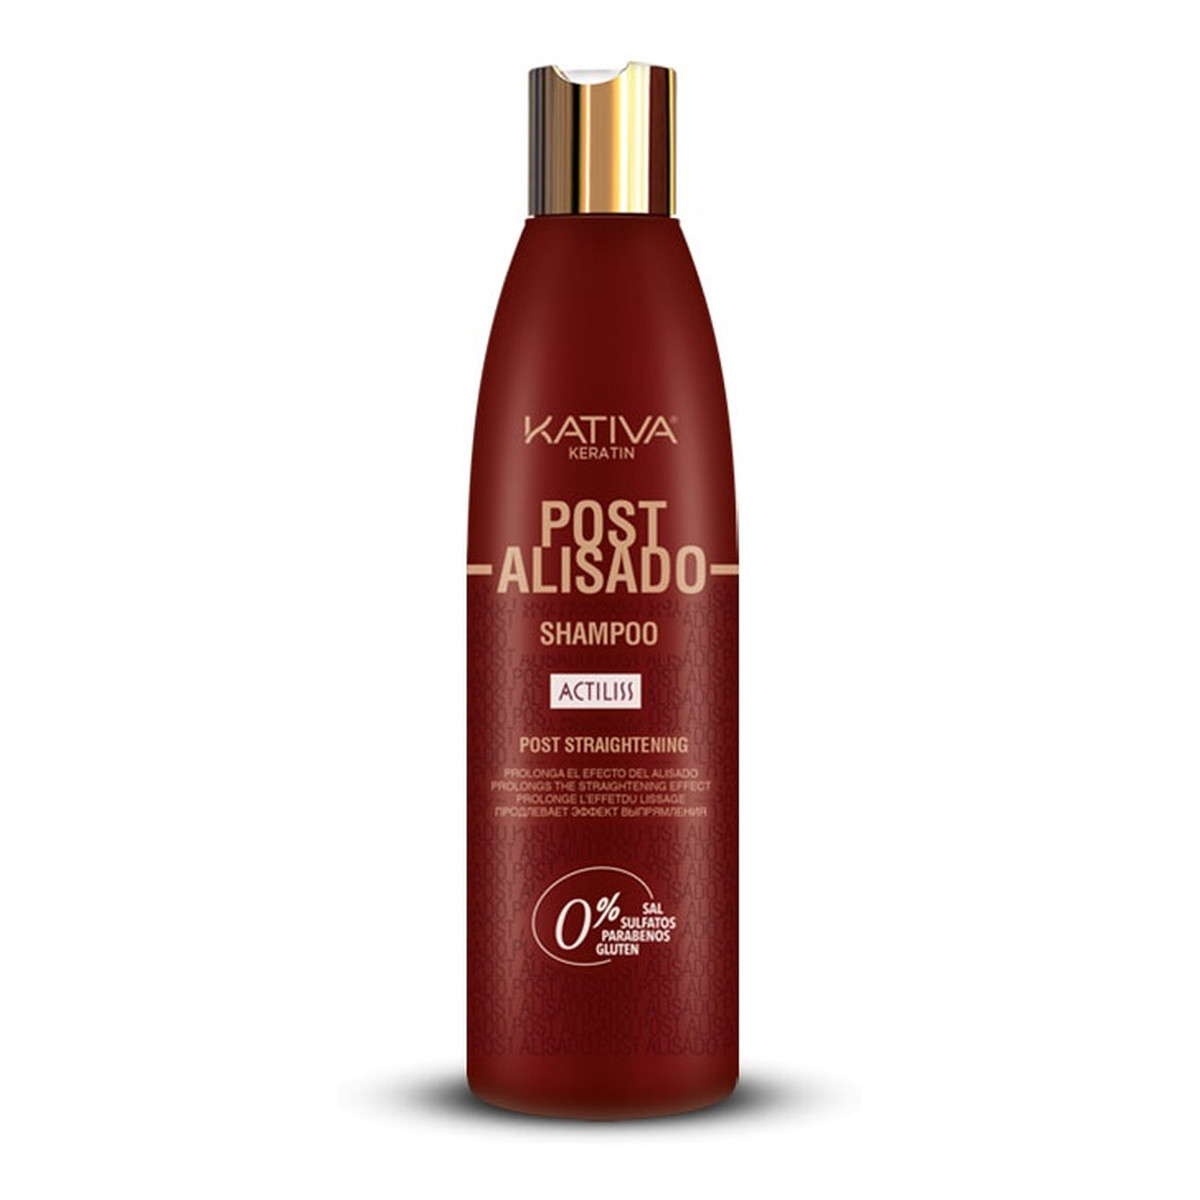 Kativa Keratin post alisado shampoo szampon do włosów z keratyną roślinną przedłużający efekt wygładzenia 250ml